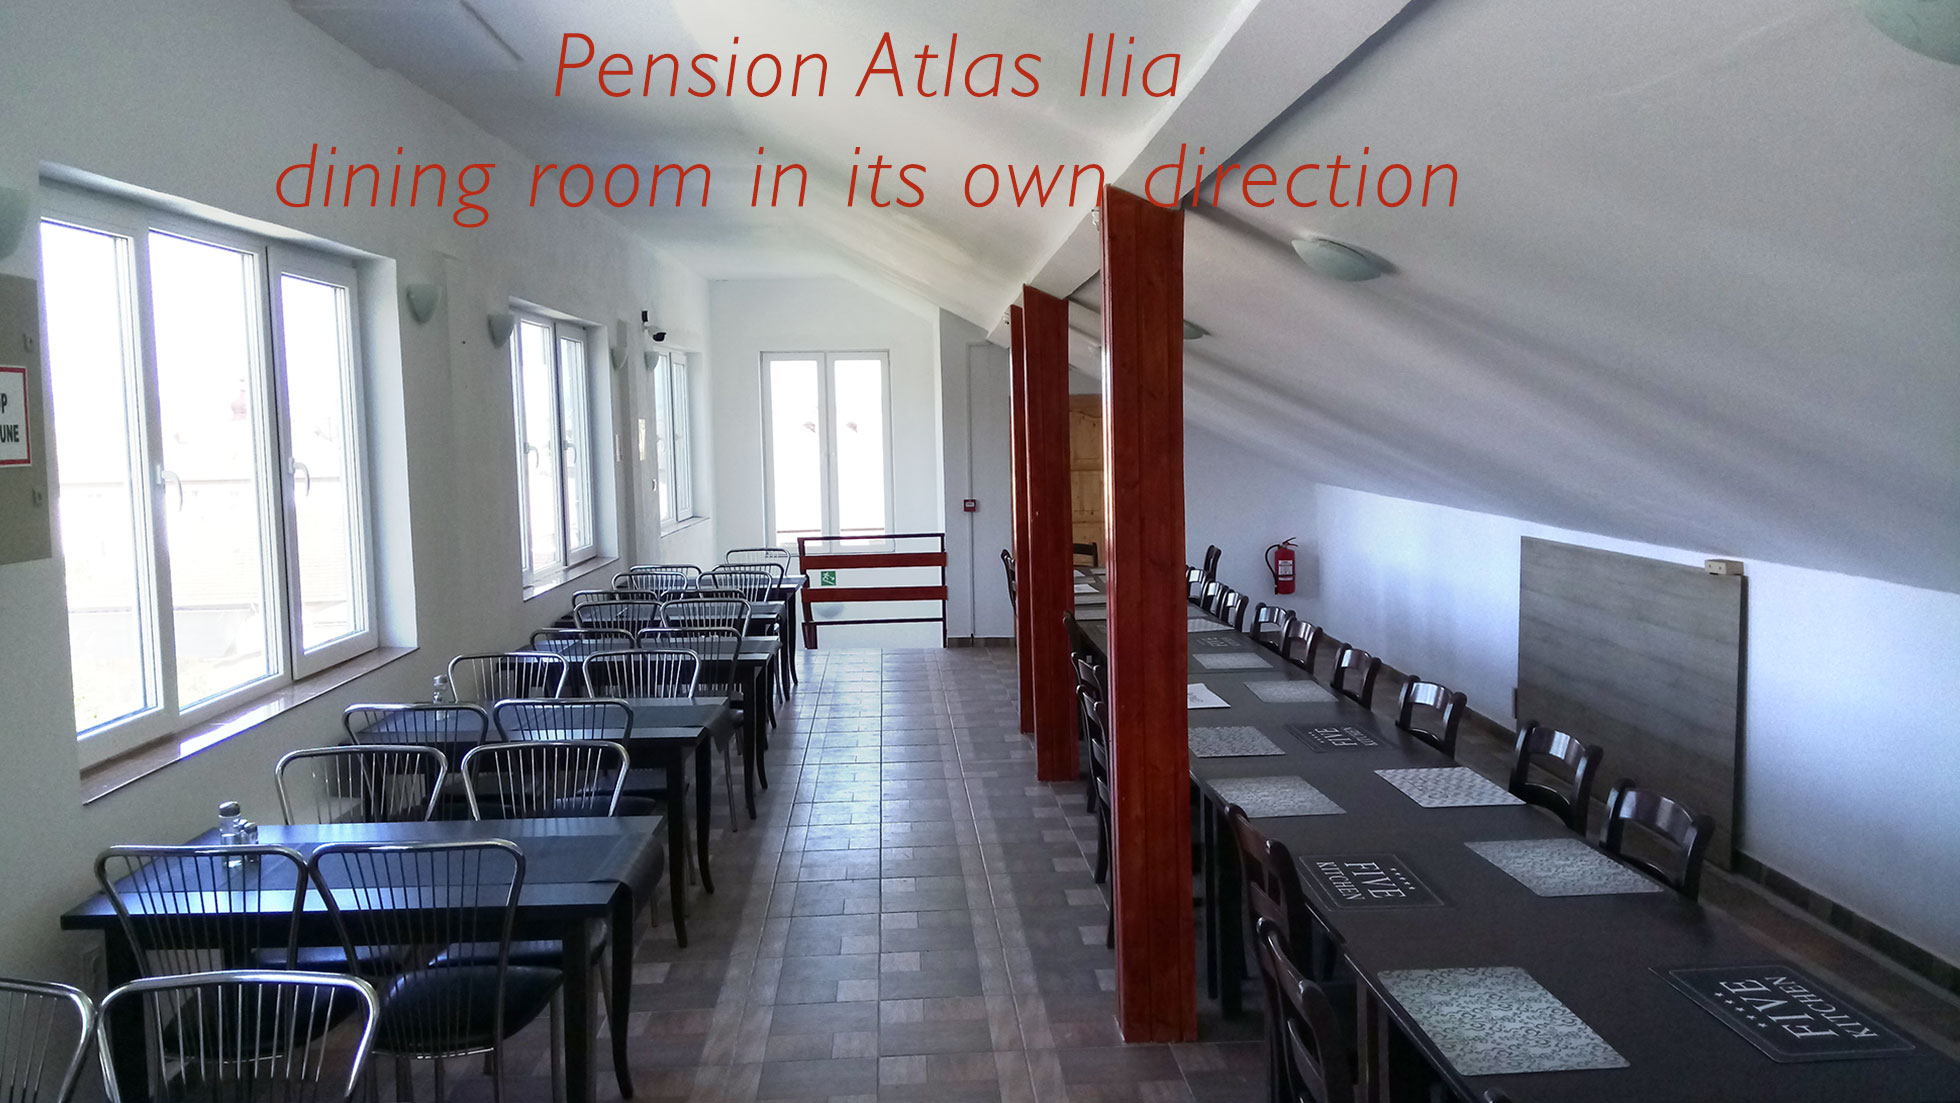 Pension Atlas Ilia - dining room